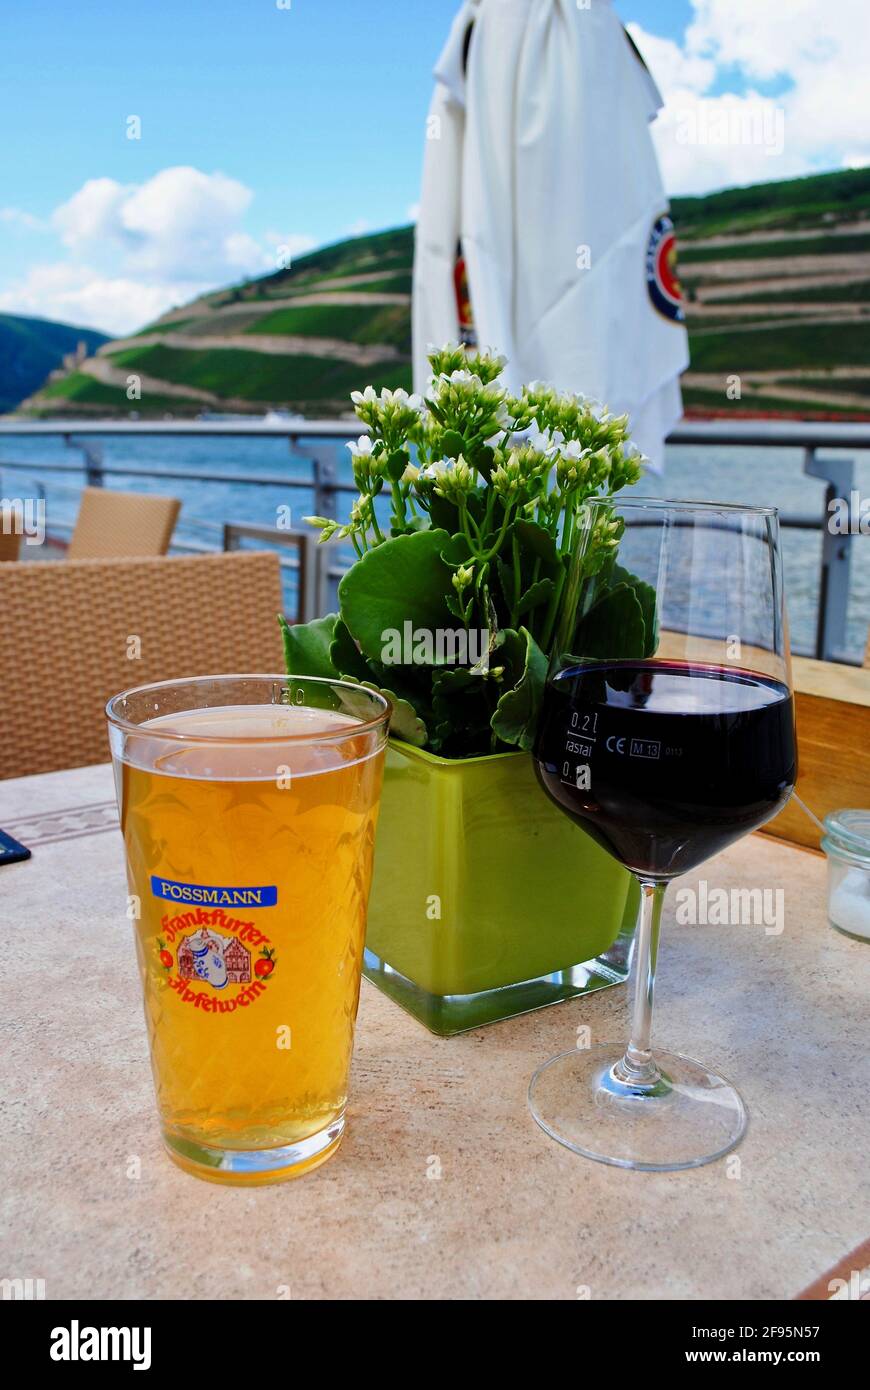 Deux verres, Possmann Frankfurter Apfelwein et vin rouge, table avec fleurs. Rivière Rhein et vignobles. Bingen am Rhein, Allemagne. Banque D'Images